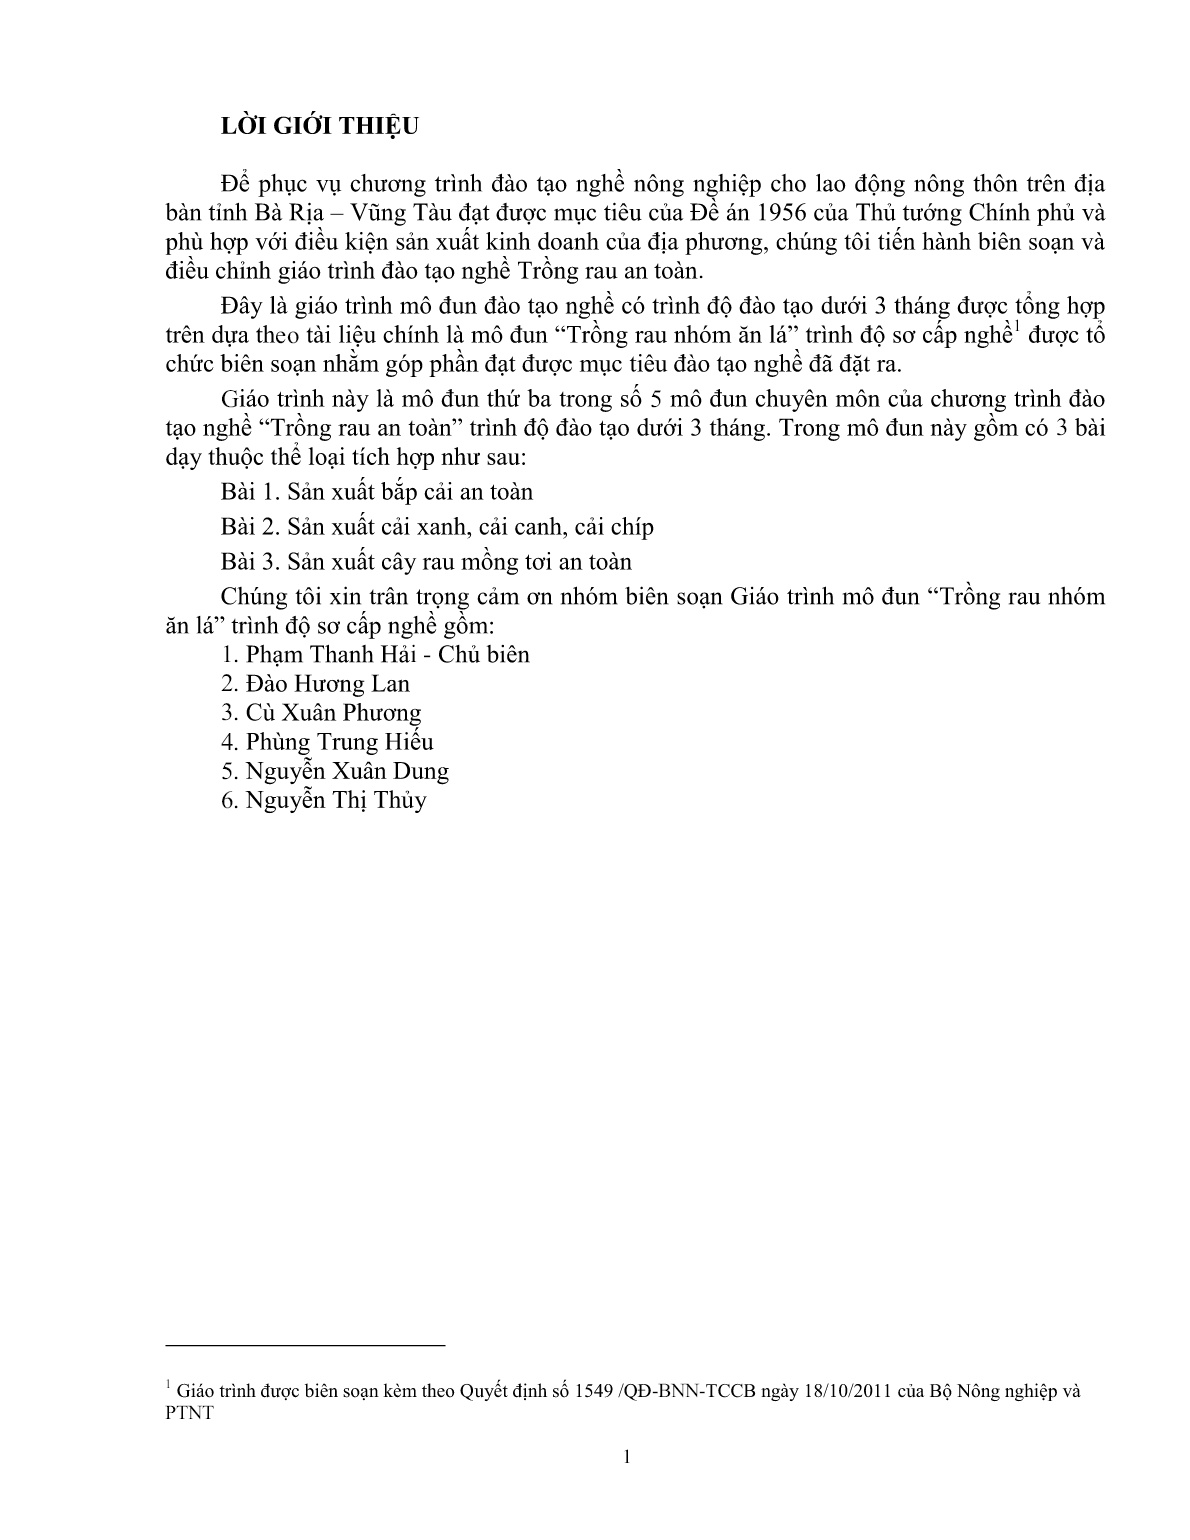 Giáo trình mô đun Trồng rau nhóm ăn lá (Trình độ: Đào tạo dưới 03 tháng) trang 2